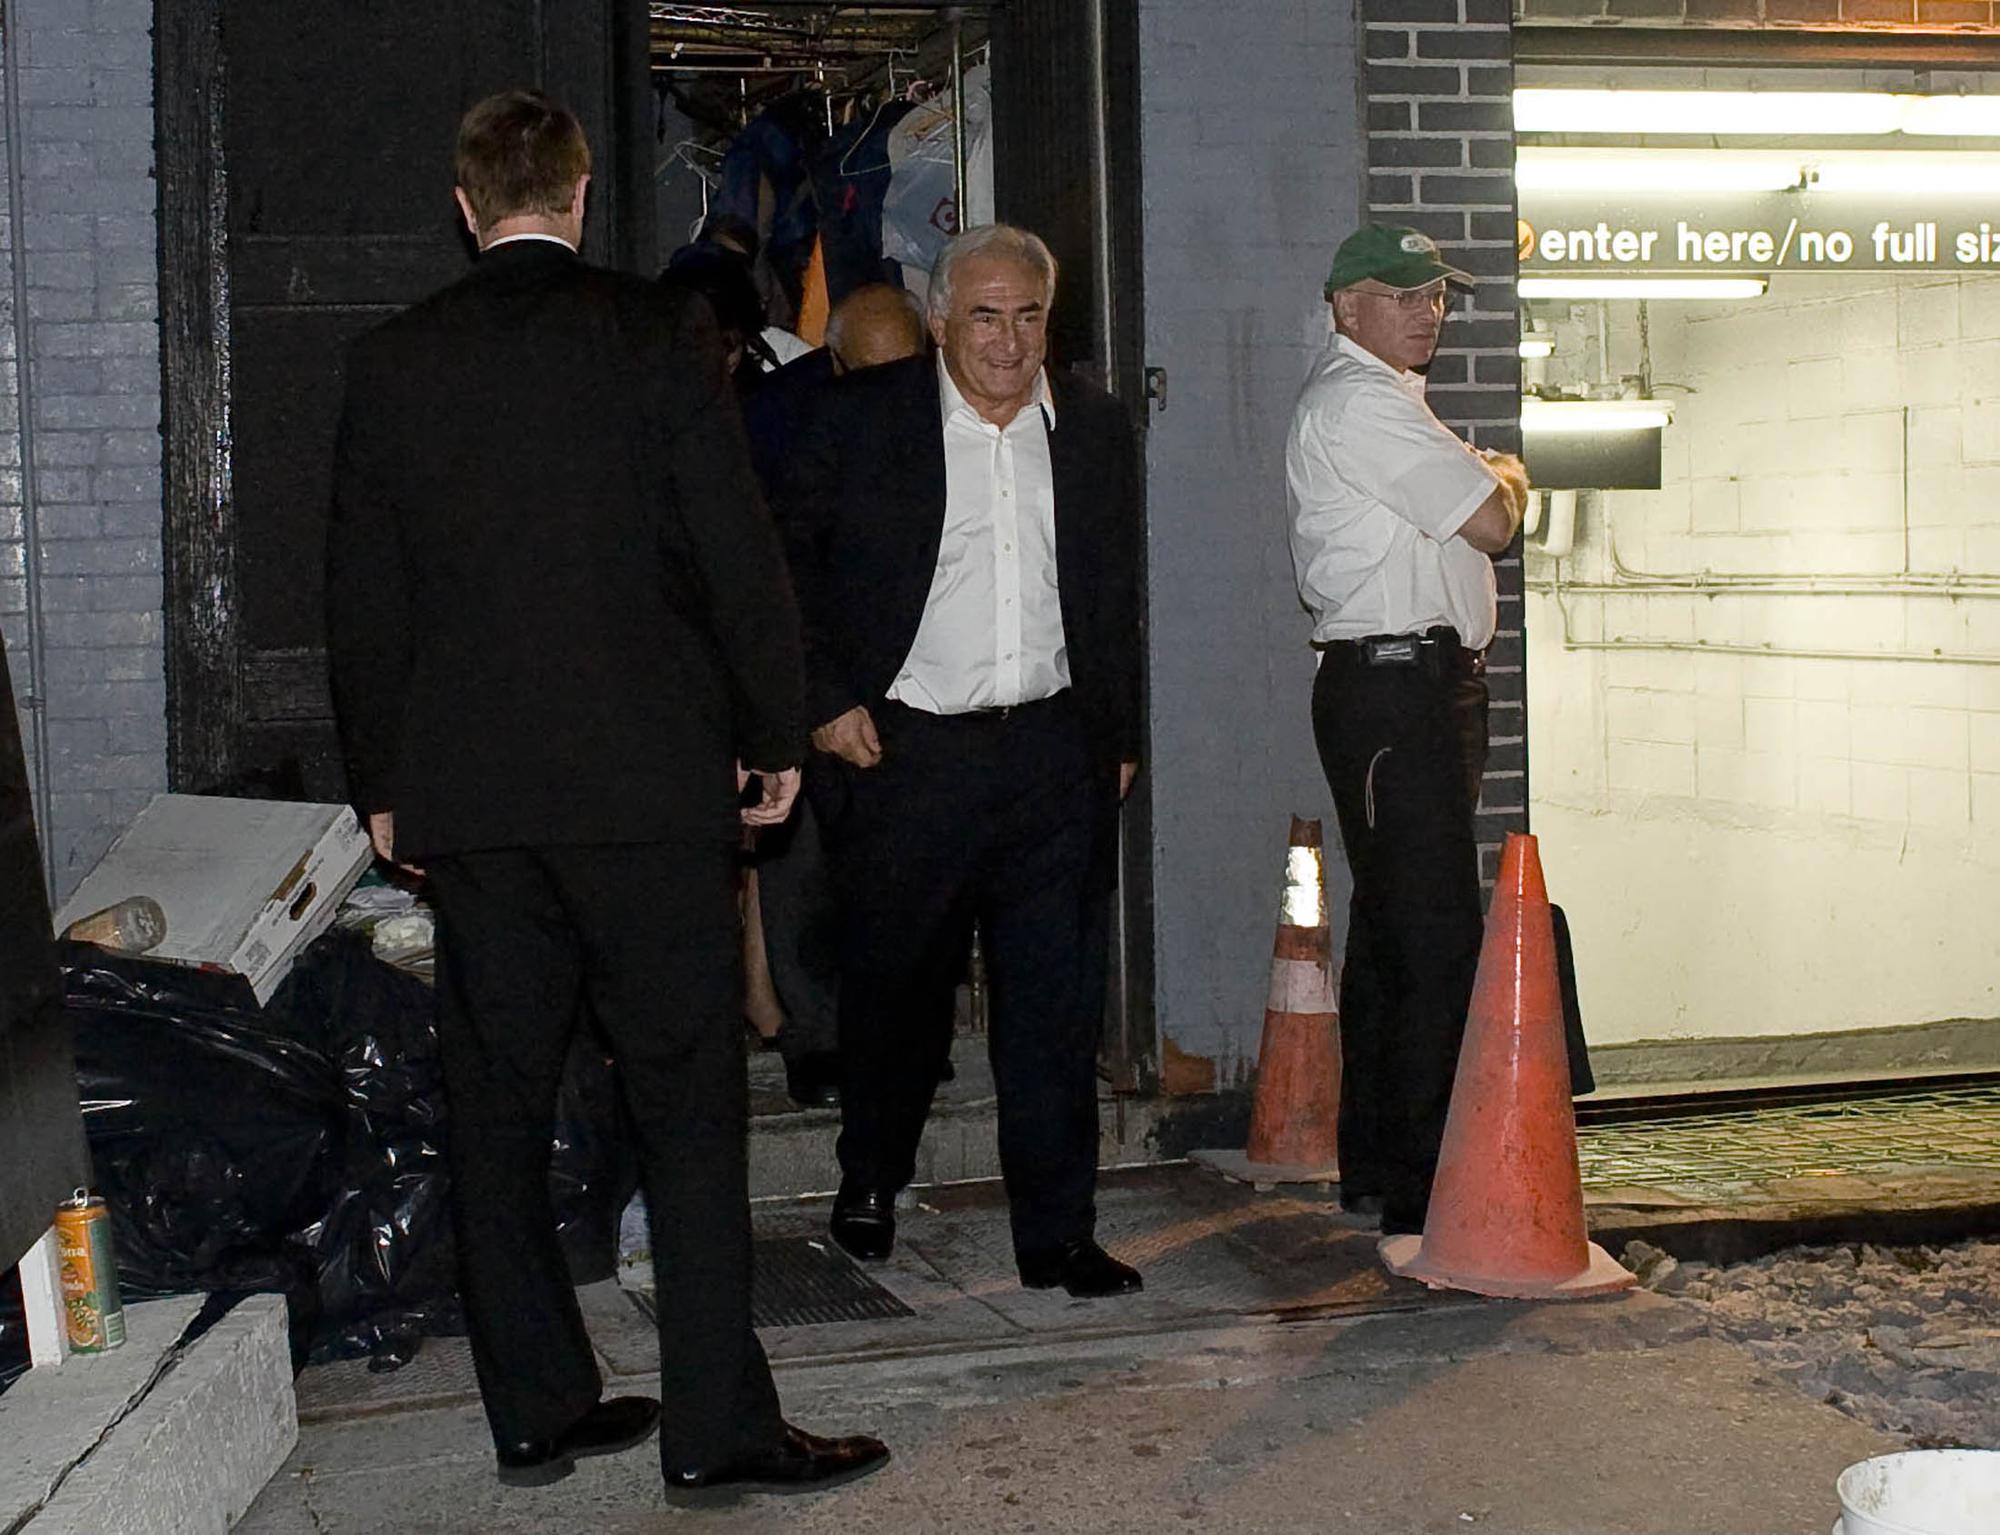 Pour sa première soirée libre, Dominique Strauss-Kahn est allé dîner dans un restaurant huppé, et est sorti par une porte dérobée. [Allison Joyce]